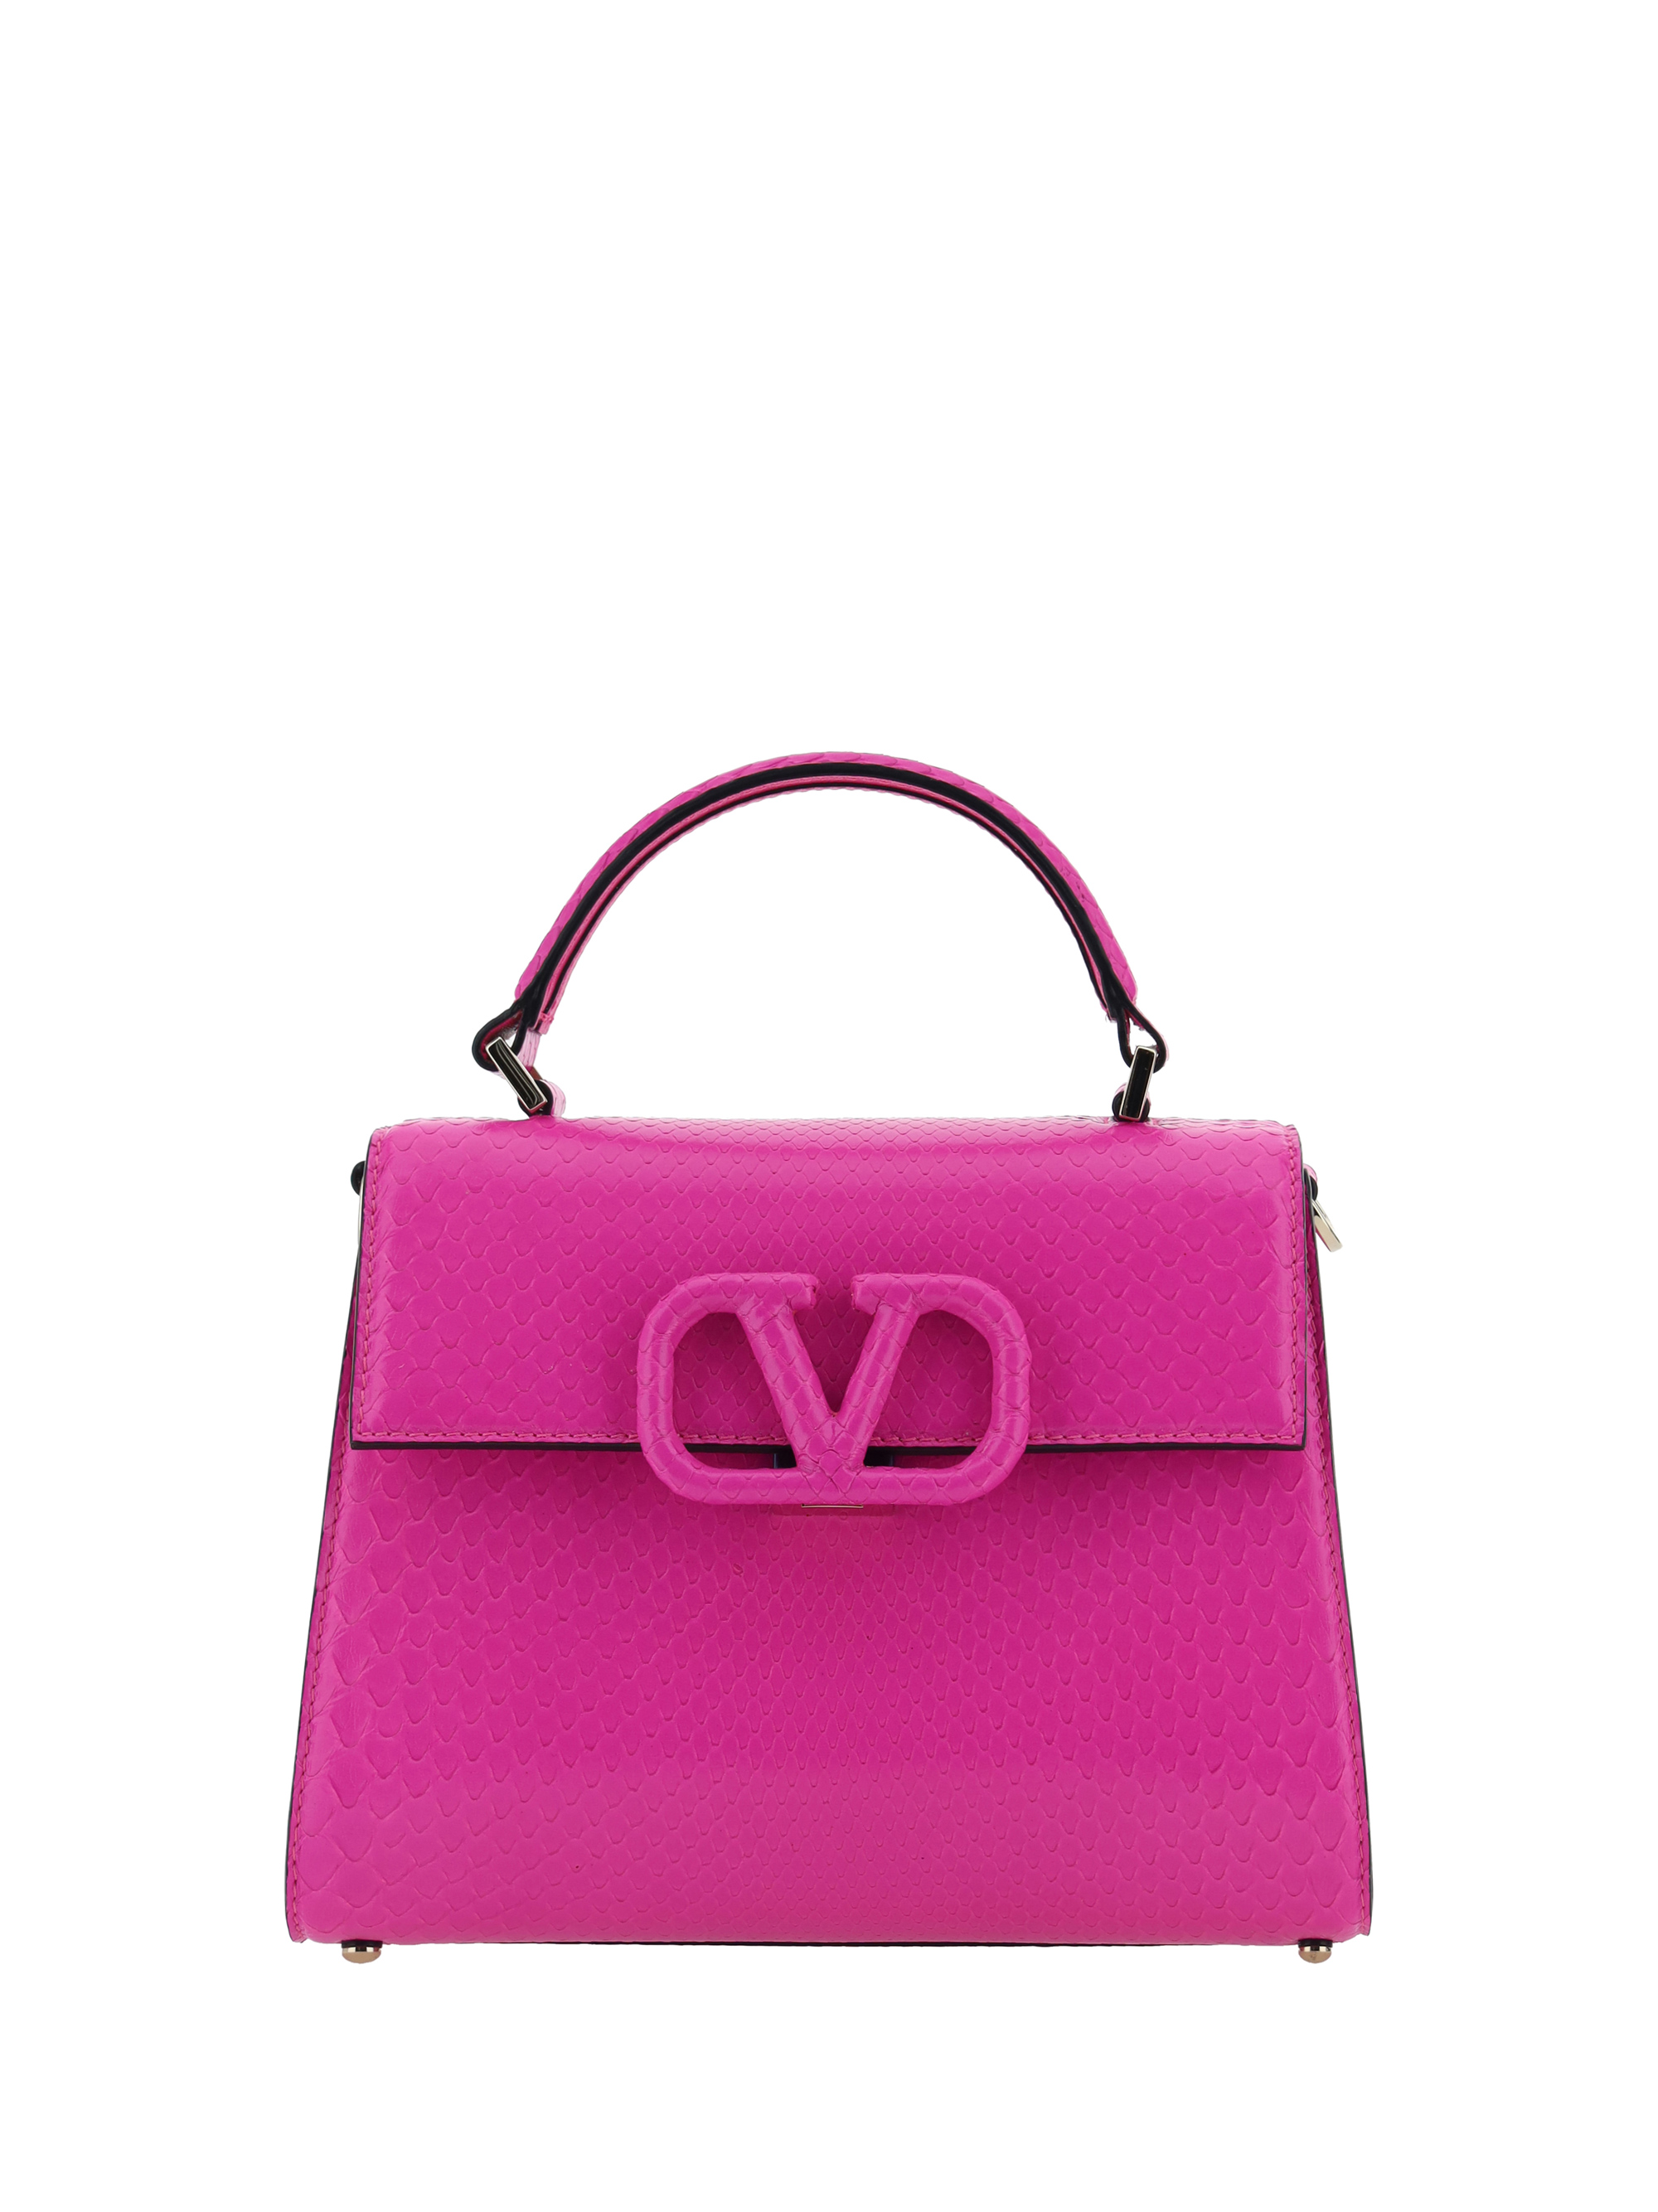 Valentino Garavani Small Handbag In Pink Pp